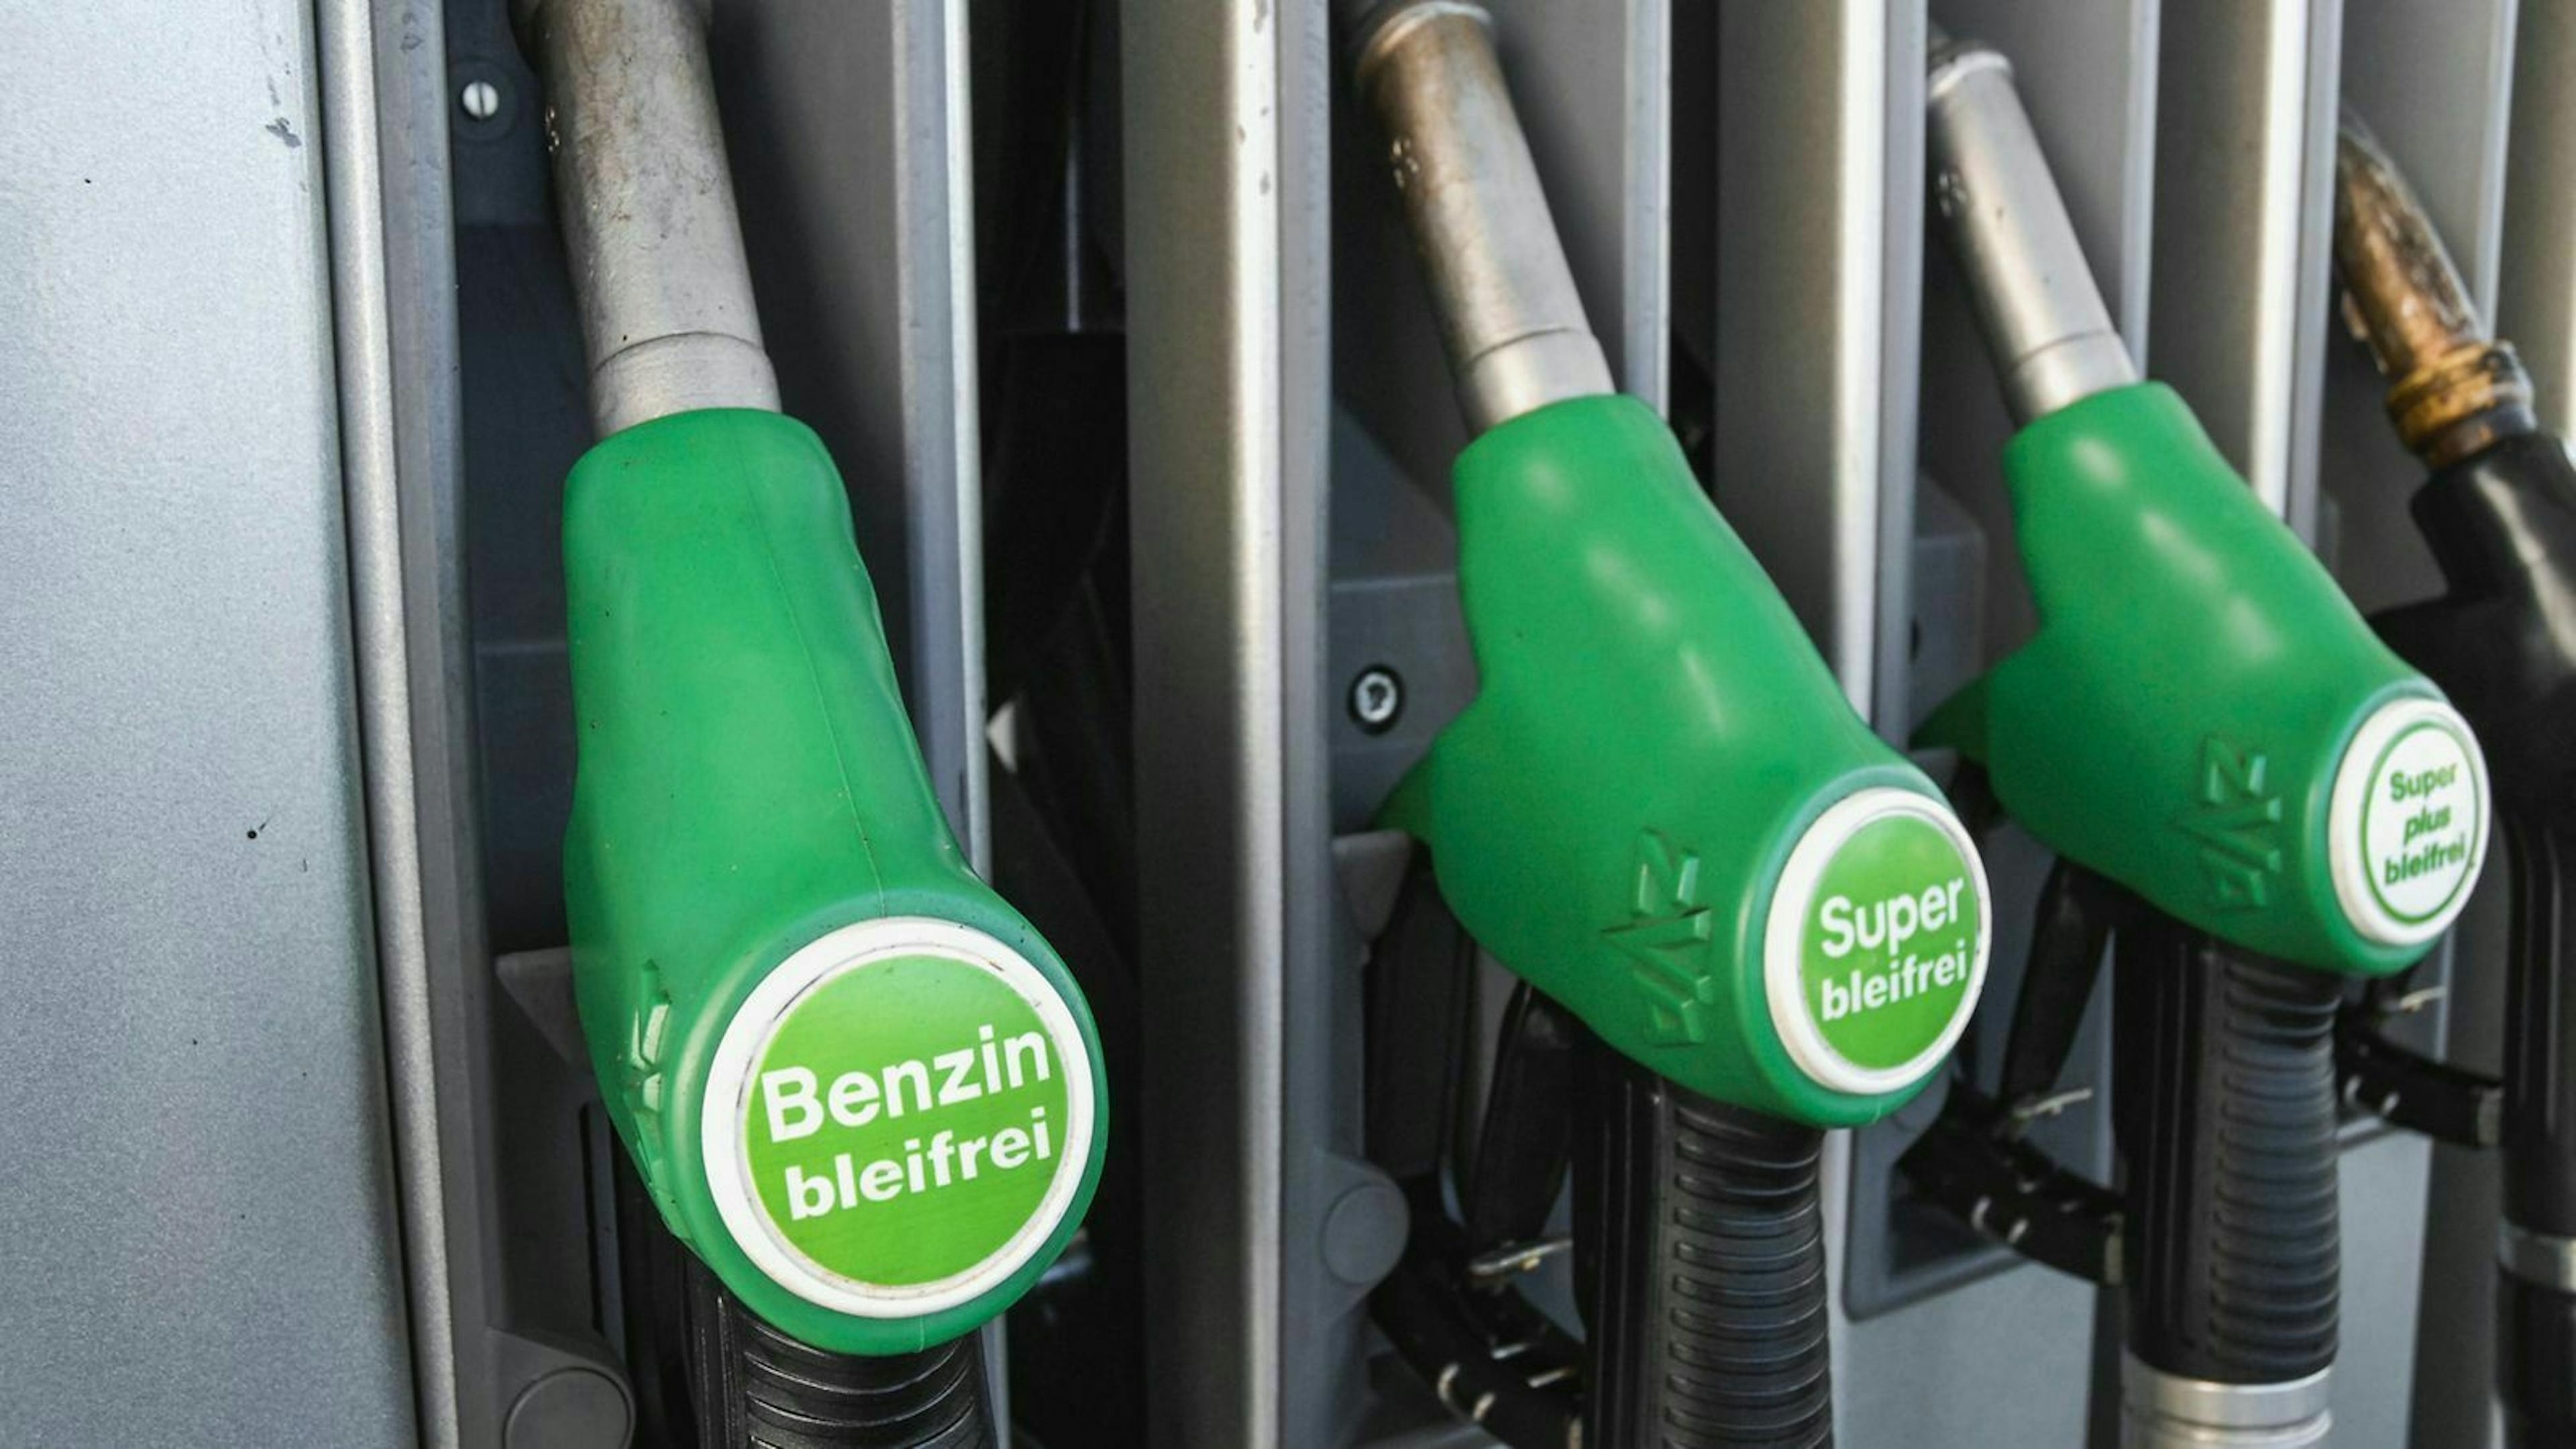 Seit dem Jahr 2000 ist verbleites Benzin in Europa verboten. Seitdem findest Du an den Tankstellen nur noch bleifreies Benzin.